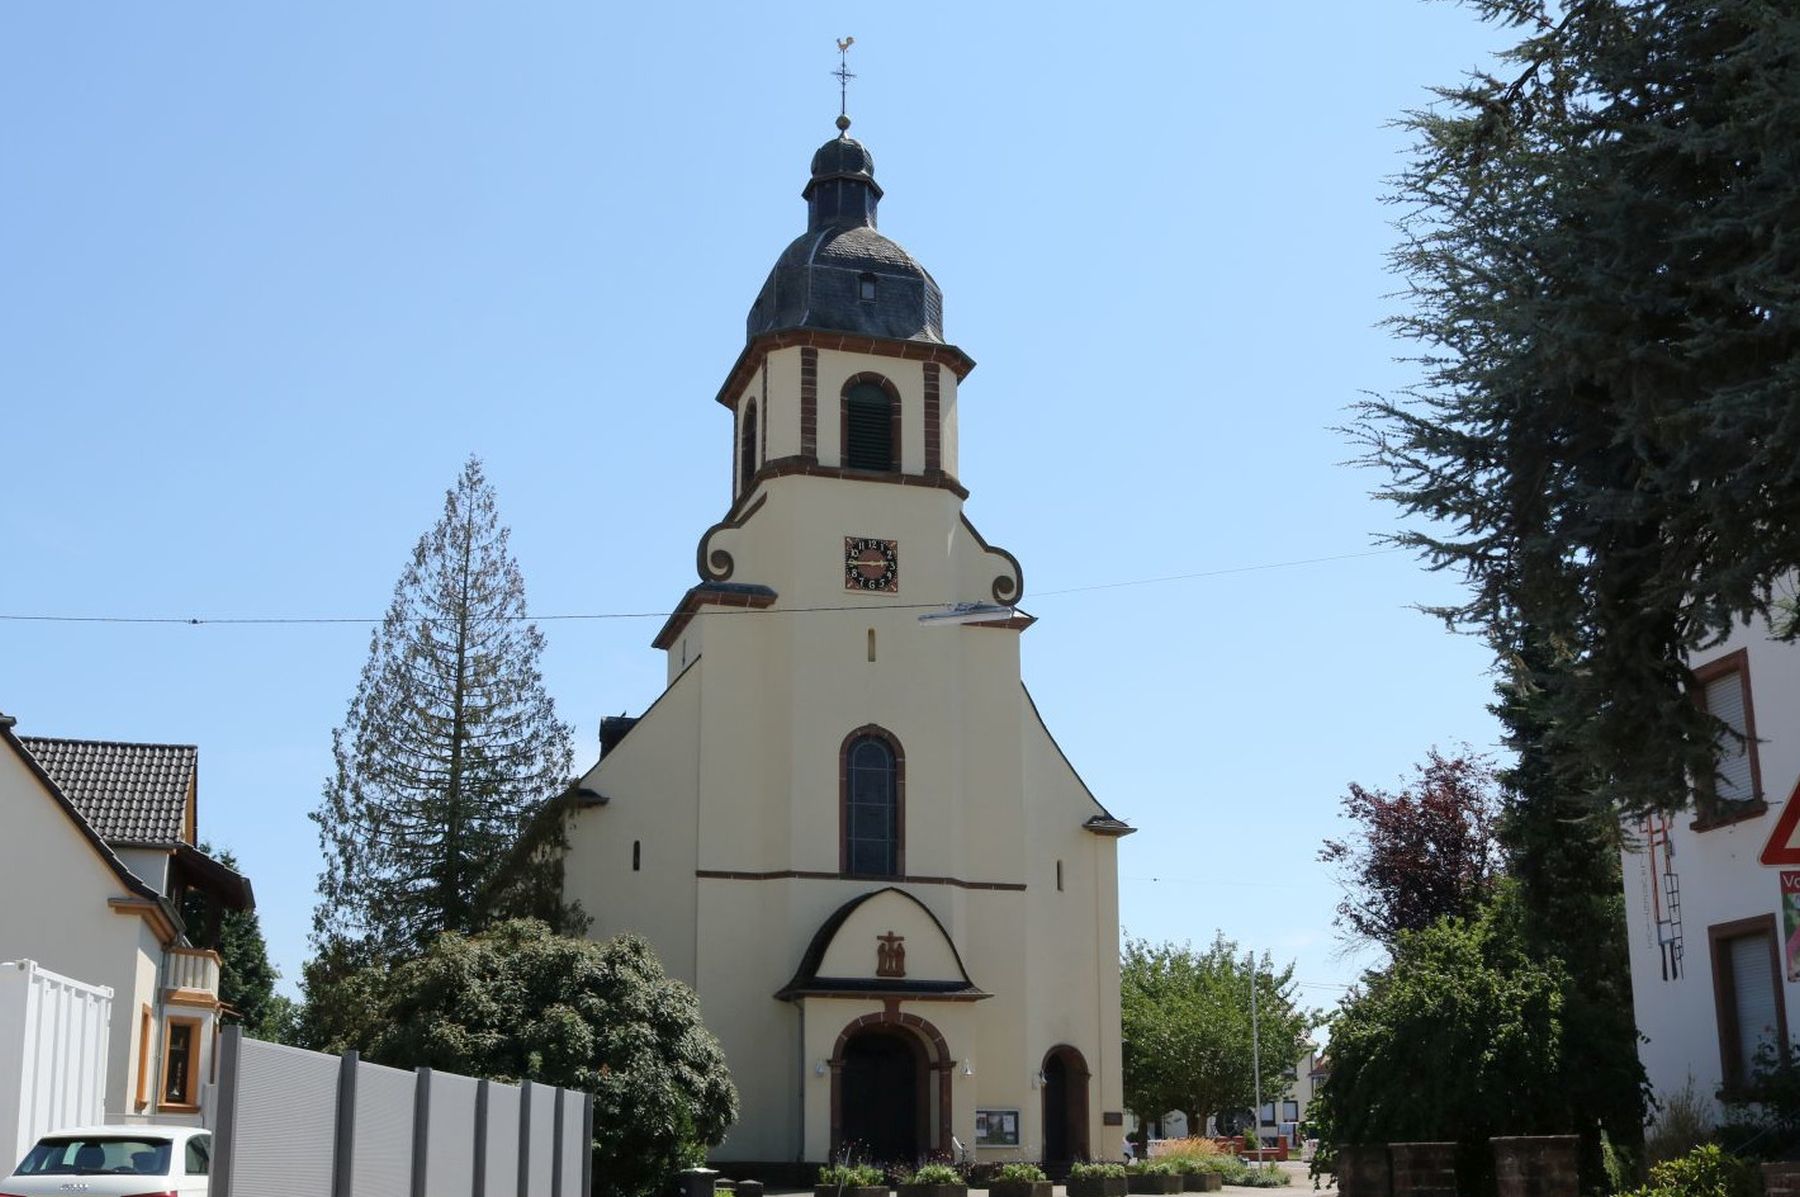 Das Foto zeigt die Kirche im Stadtteil Schwemlingen.